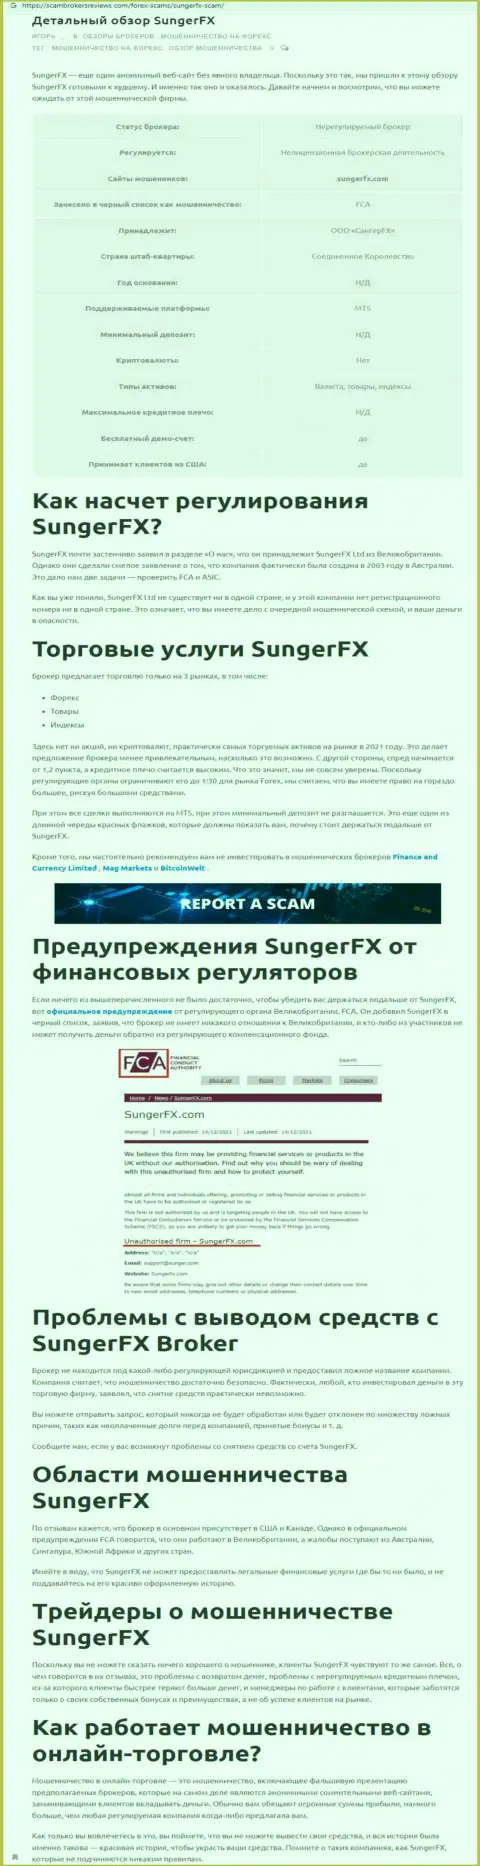 Автор обзора рассказывает о мошенничестве, которое постоянно происходит в конторе SungerFX Com